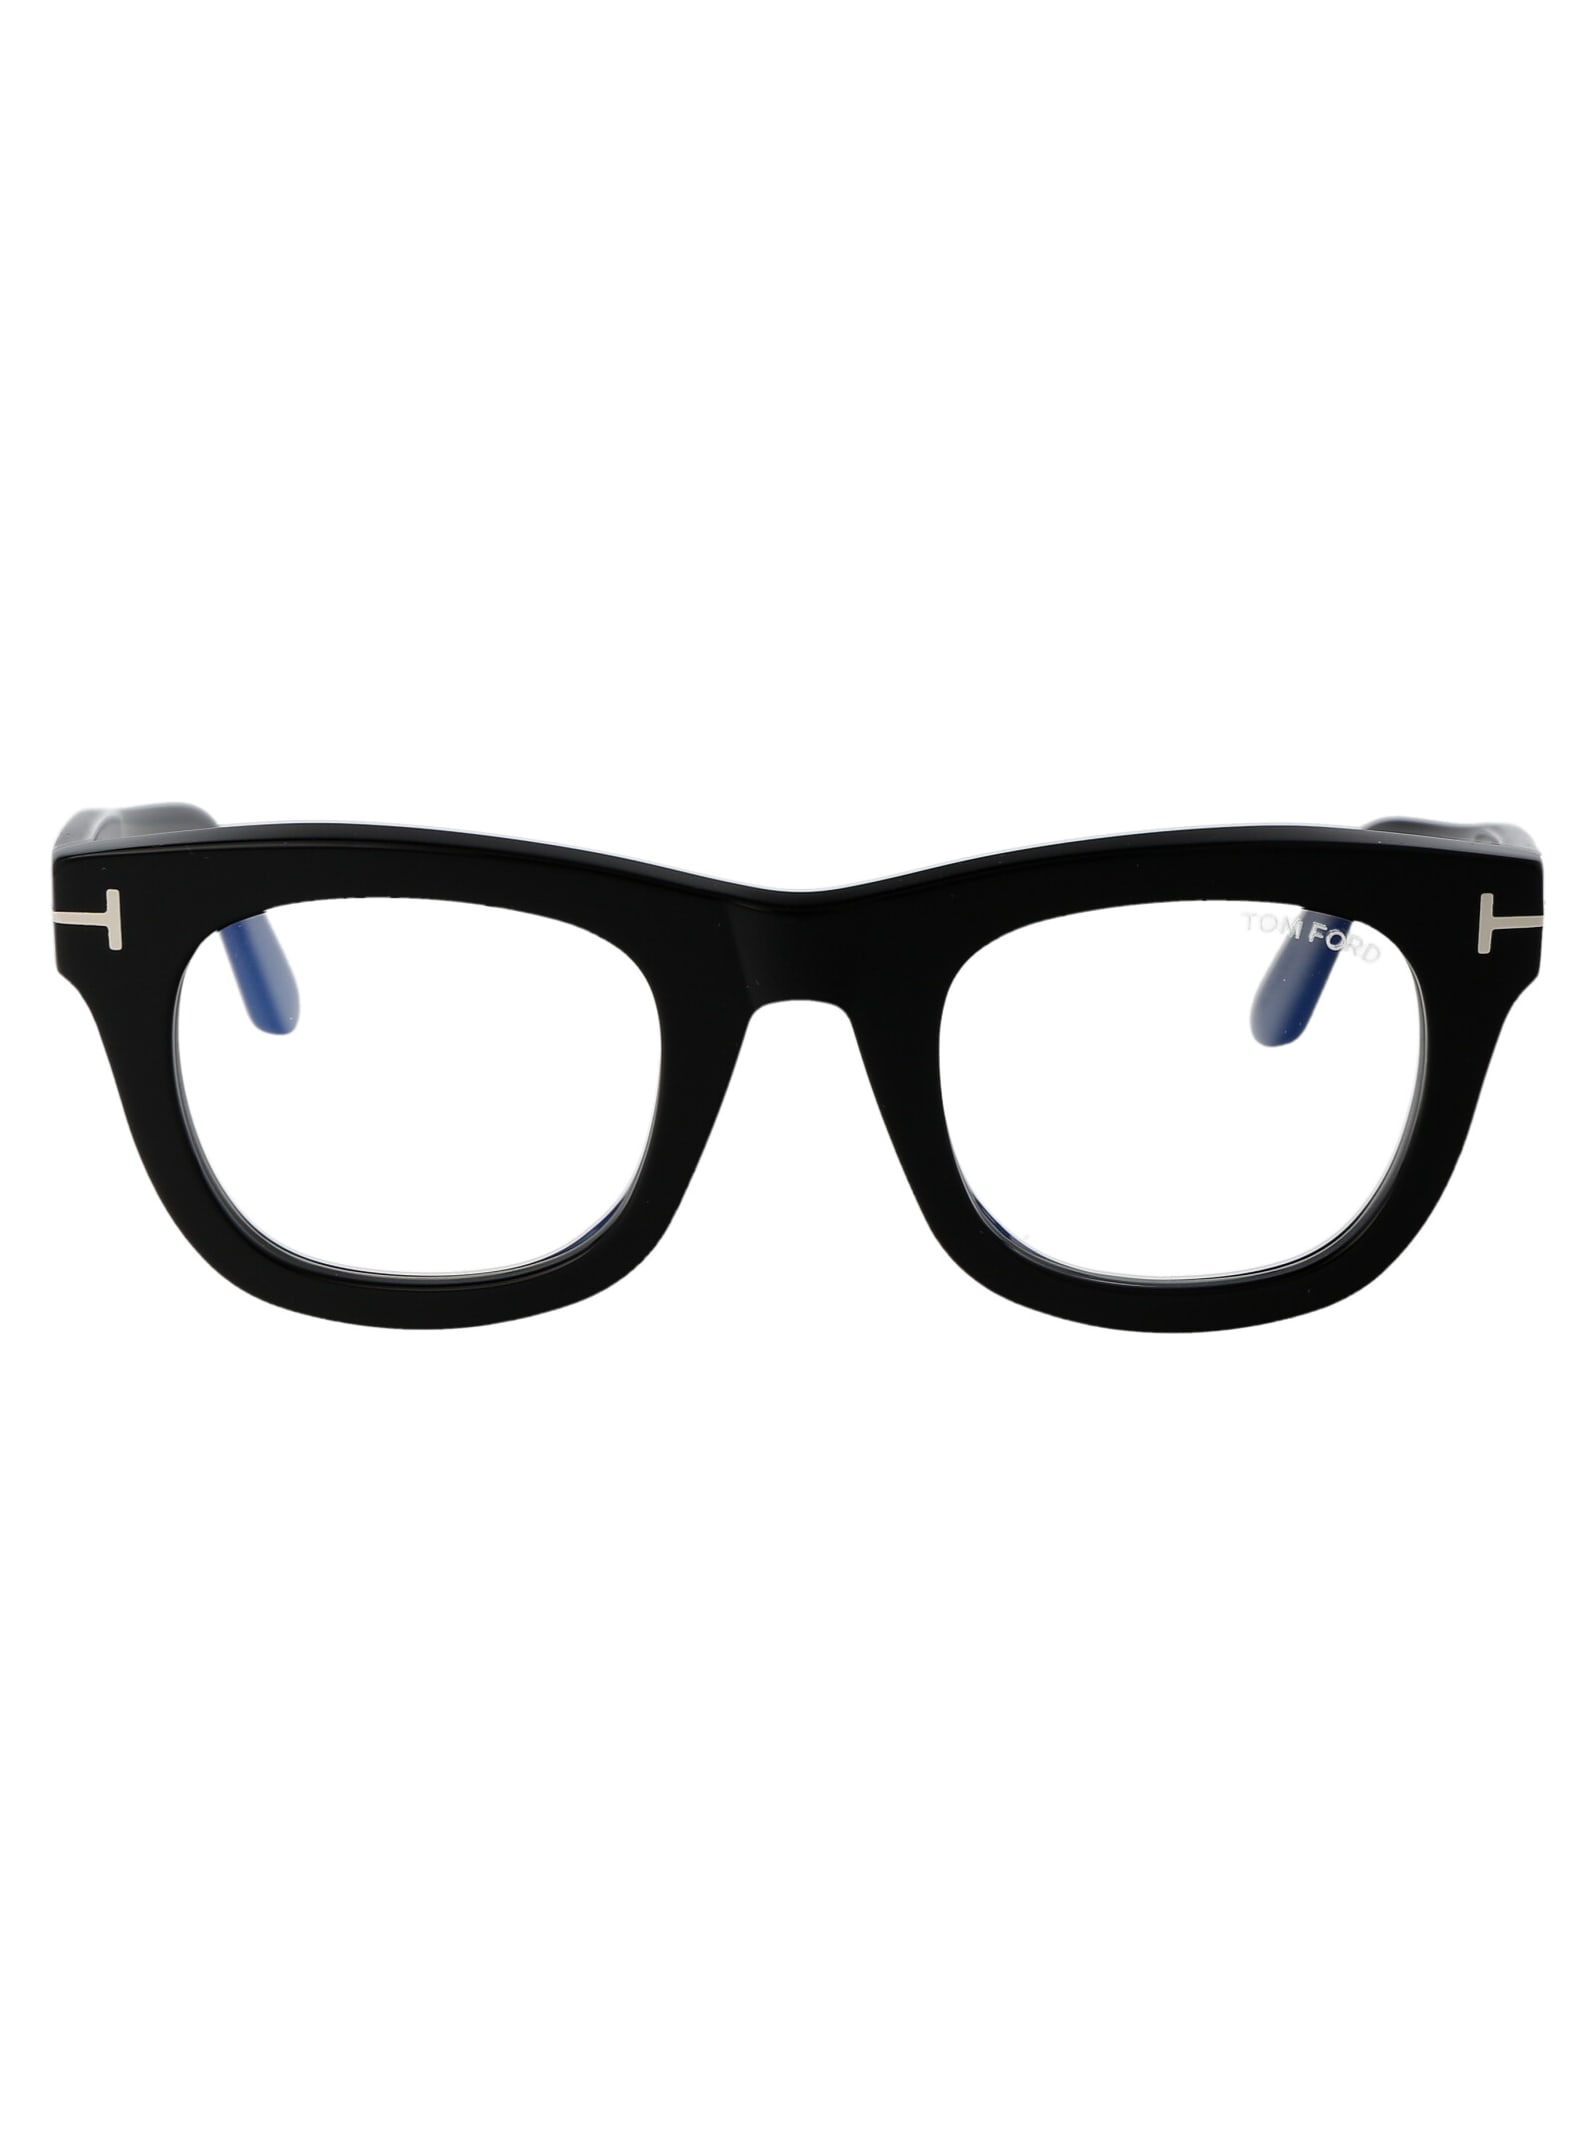 Ft5872-b Glasses